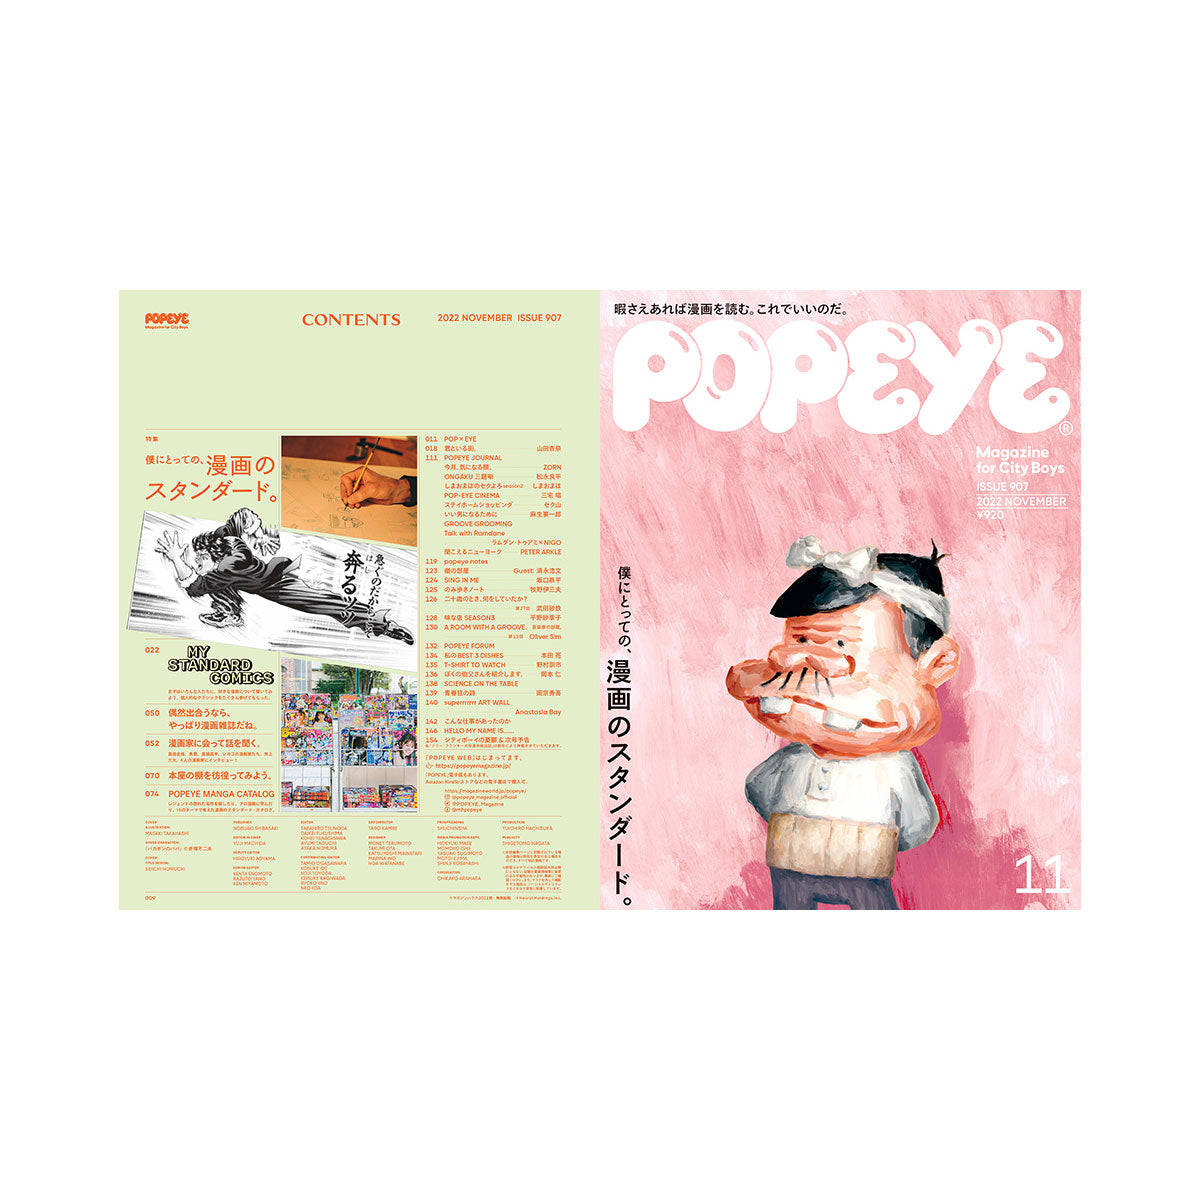 popeye magazine issue 907